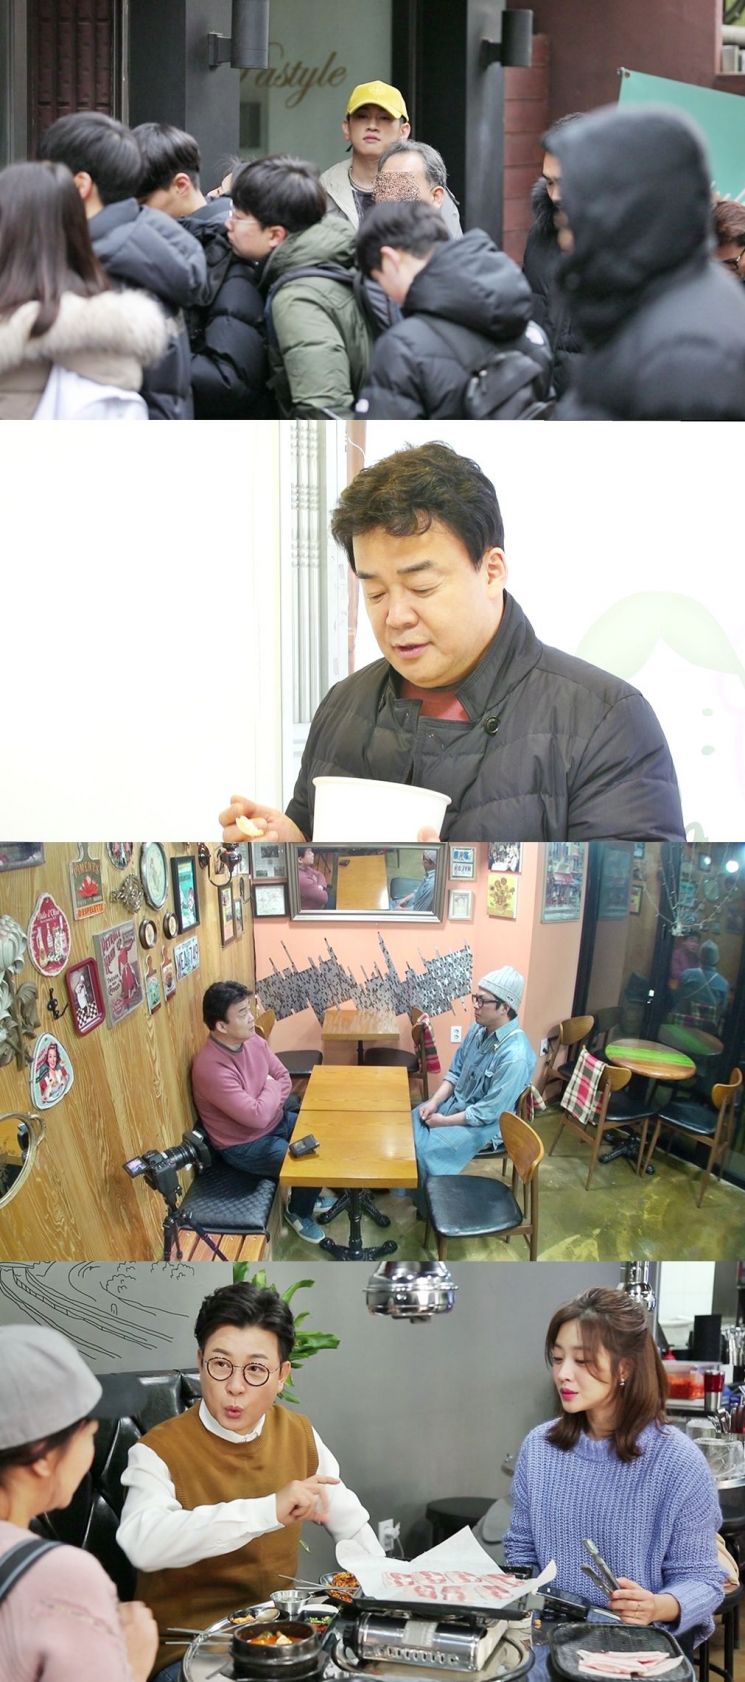 '골목식당' 고막남친 크러쉬, 닭볶음탕 먹고 "미쳤다" 외친 이유